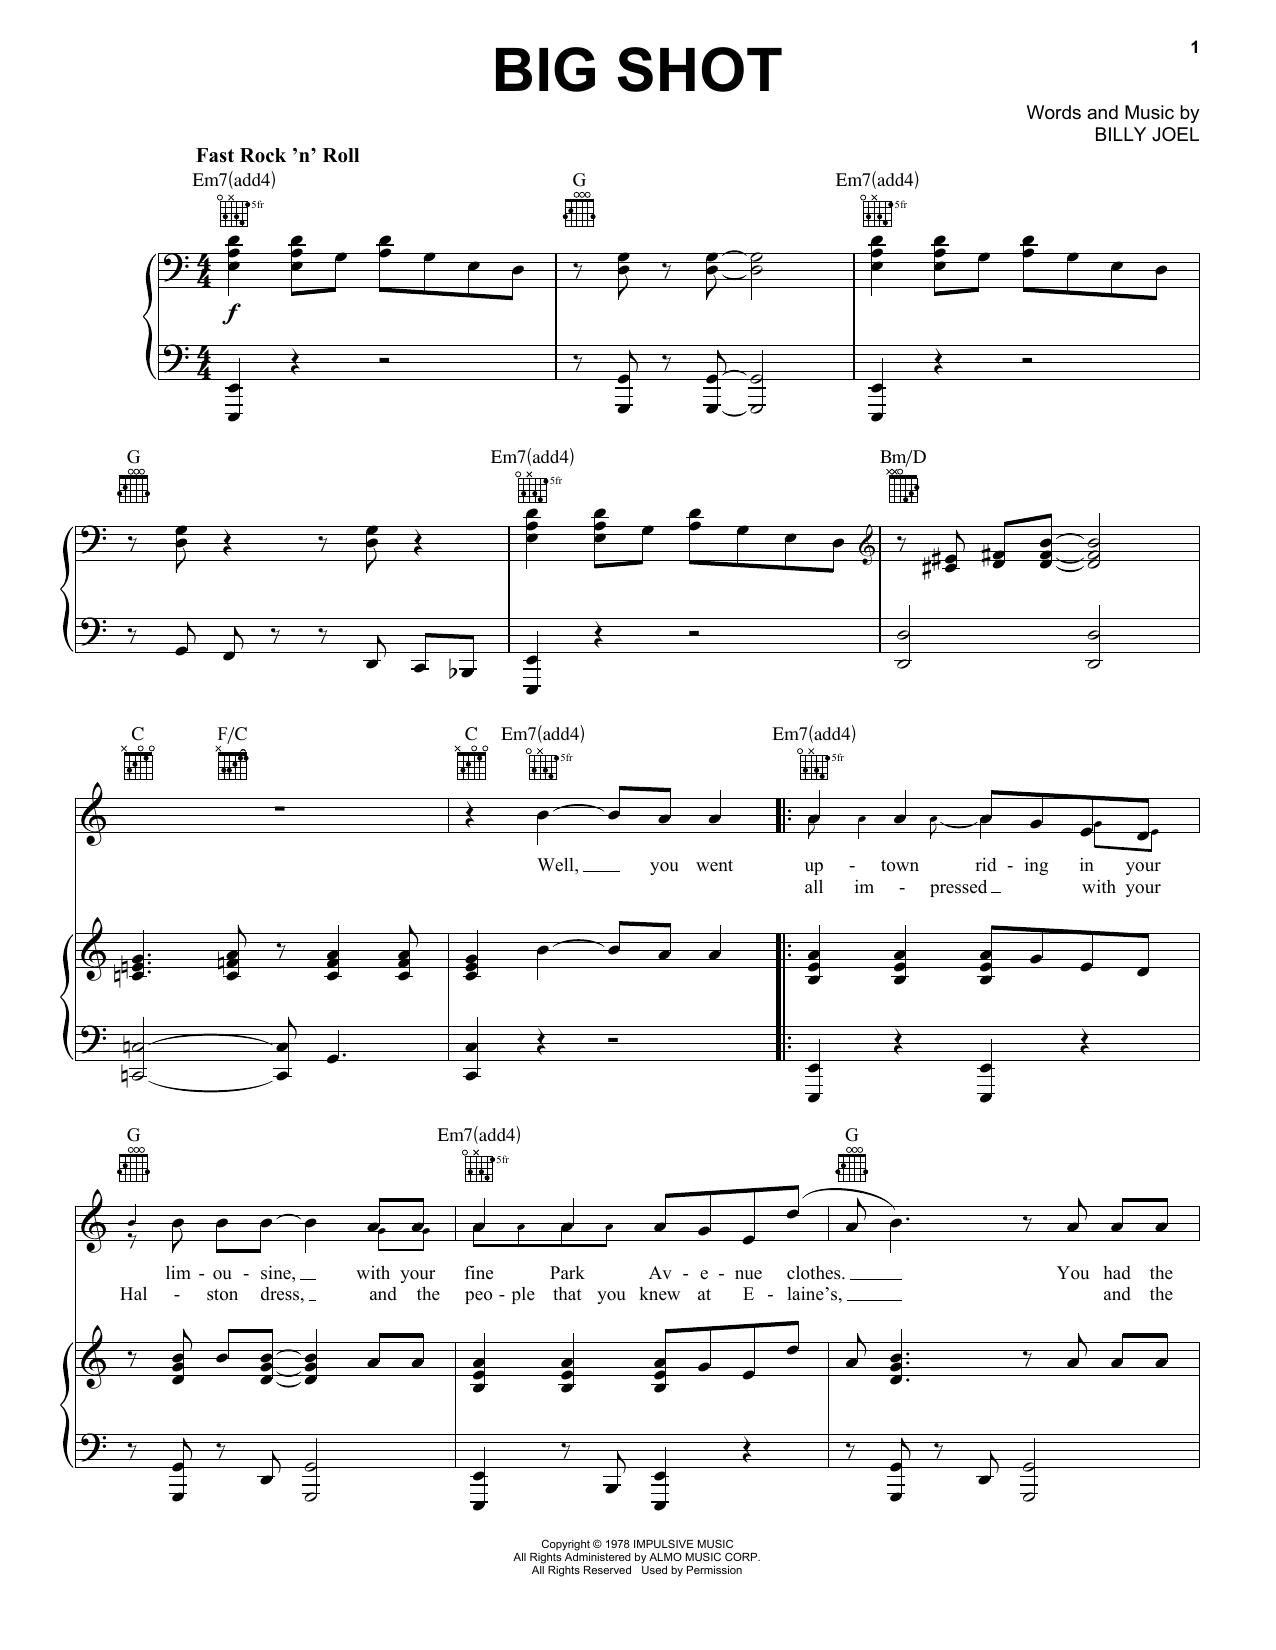 Billy Joel Big Shot Sheet Music Notes & Chords for Lyrics & Chords - Download or Print PDF